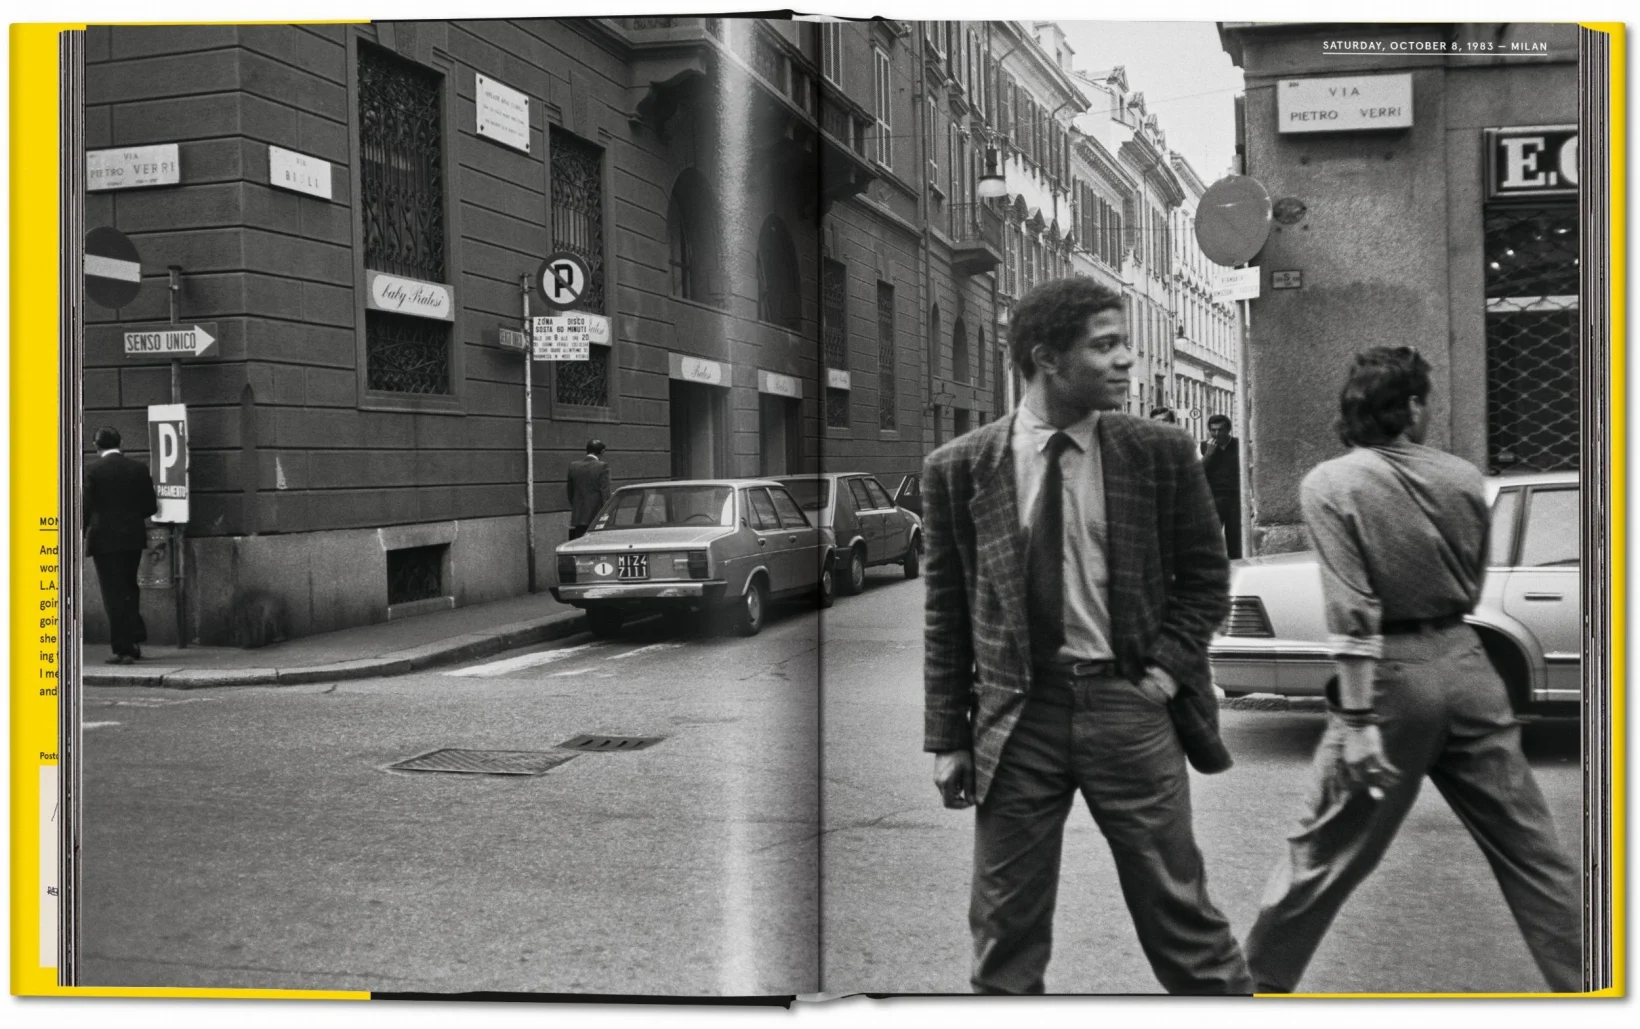 "Warhol on Basquiat: the Iconic Relationship Told in Andy's Words and Pictures" è un vero e proprio viaggio nell'intimità di una delle relazioni più celebri e influenti nel mondo dell'arte moderna. Questo imperdibile volume in formato Hardcover ci offre l'opportunità di immergerci nella straordinaria amicizia e collaborazione tra due leggende dell'arte, Andy Warhol e Jean-Michel Basquiat. Le pagine di questo libro prezioso sono un tesoro di testimonianze, fotografie e opere d'arte che rivelano la complessa dinamica tra due visionari che hanno lasciato un'impronta indelebile sulla scena artistica contemporanea. Andy Warhol, il maestro del pop art, e Jean-Michel Basquiat, l'artista prodigio della streetart, si incontrarono nel corso degli anni '80, dando vita a un'intensa e fruttuosa collaborazione che andò ben oltre il mondo dell'arte. Questo volume ci permette di accedere alle parole e alle immagini di Andy Warhol stesso, che ci racconta la loro relazione unica e delinea il loro processo creativo con una sincerità e una passione travolgenti. Grazie a una selezione curata di fotografie, opere d'arte e scritti, possiamo ammirare l'evoluzione dell'amicizia tra questi due geni dell'arte e come si siano influenzati reciprocamente. Dall'artista più affermato e iconico del suo tempo, Warhol, al giovane e rivoluzionario Basquiat, entrambi trovarono nella loro alleanza artistica uno spazio di sperimentazione e innovazione che li ha portati a sfidare le convenzioni e a rompere i confini delle rispettive discipline. Attraverso le parole di Andy e le immagini che hanno immortalato i loro momenti condivisi, possiamo percepire l'intensità dell'energia creativa che emanava da questa straordinaria amicizia. Dai loro viaggi e collaborazioni artistiche ai momenti di intimità e riflessione, ogni pagina ci catapulta in un mondo vibrante e pieno di ispirazione. "Warhol on Basquiat: the Iconic Relationship Told in Andy's Words and Pictures" è una testimonianza di come due artisti visionari abbiano saputo superare le barriere sociali e culturali del loro tempo per creare un legame autentico e duraturo. È anche un'occasione per apprezzare il genio creativo di entrambi e come abbiano contribuito a ridefinire il concetto stesso di arte. Se sei un appassionato di arte, un amante delle storie umane dietro le opere d'arte o semplicemente curioso di scoprire il mondo intimo di due leggende dell'arte, allora "Warhol on Basquiat: the Iconic Relationship Told in Andy's Words and Pictures" è un'aggiunta imperdibile alla tua collezione. Scopri il legame unico tra questi due straordinari artisti e lasciati ispirare dalla loro visione e creatività senza limiti.